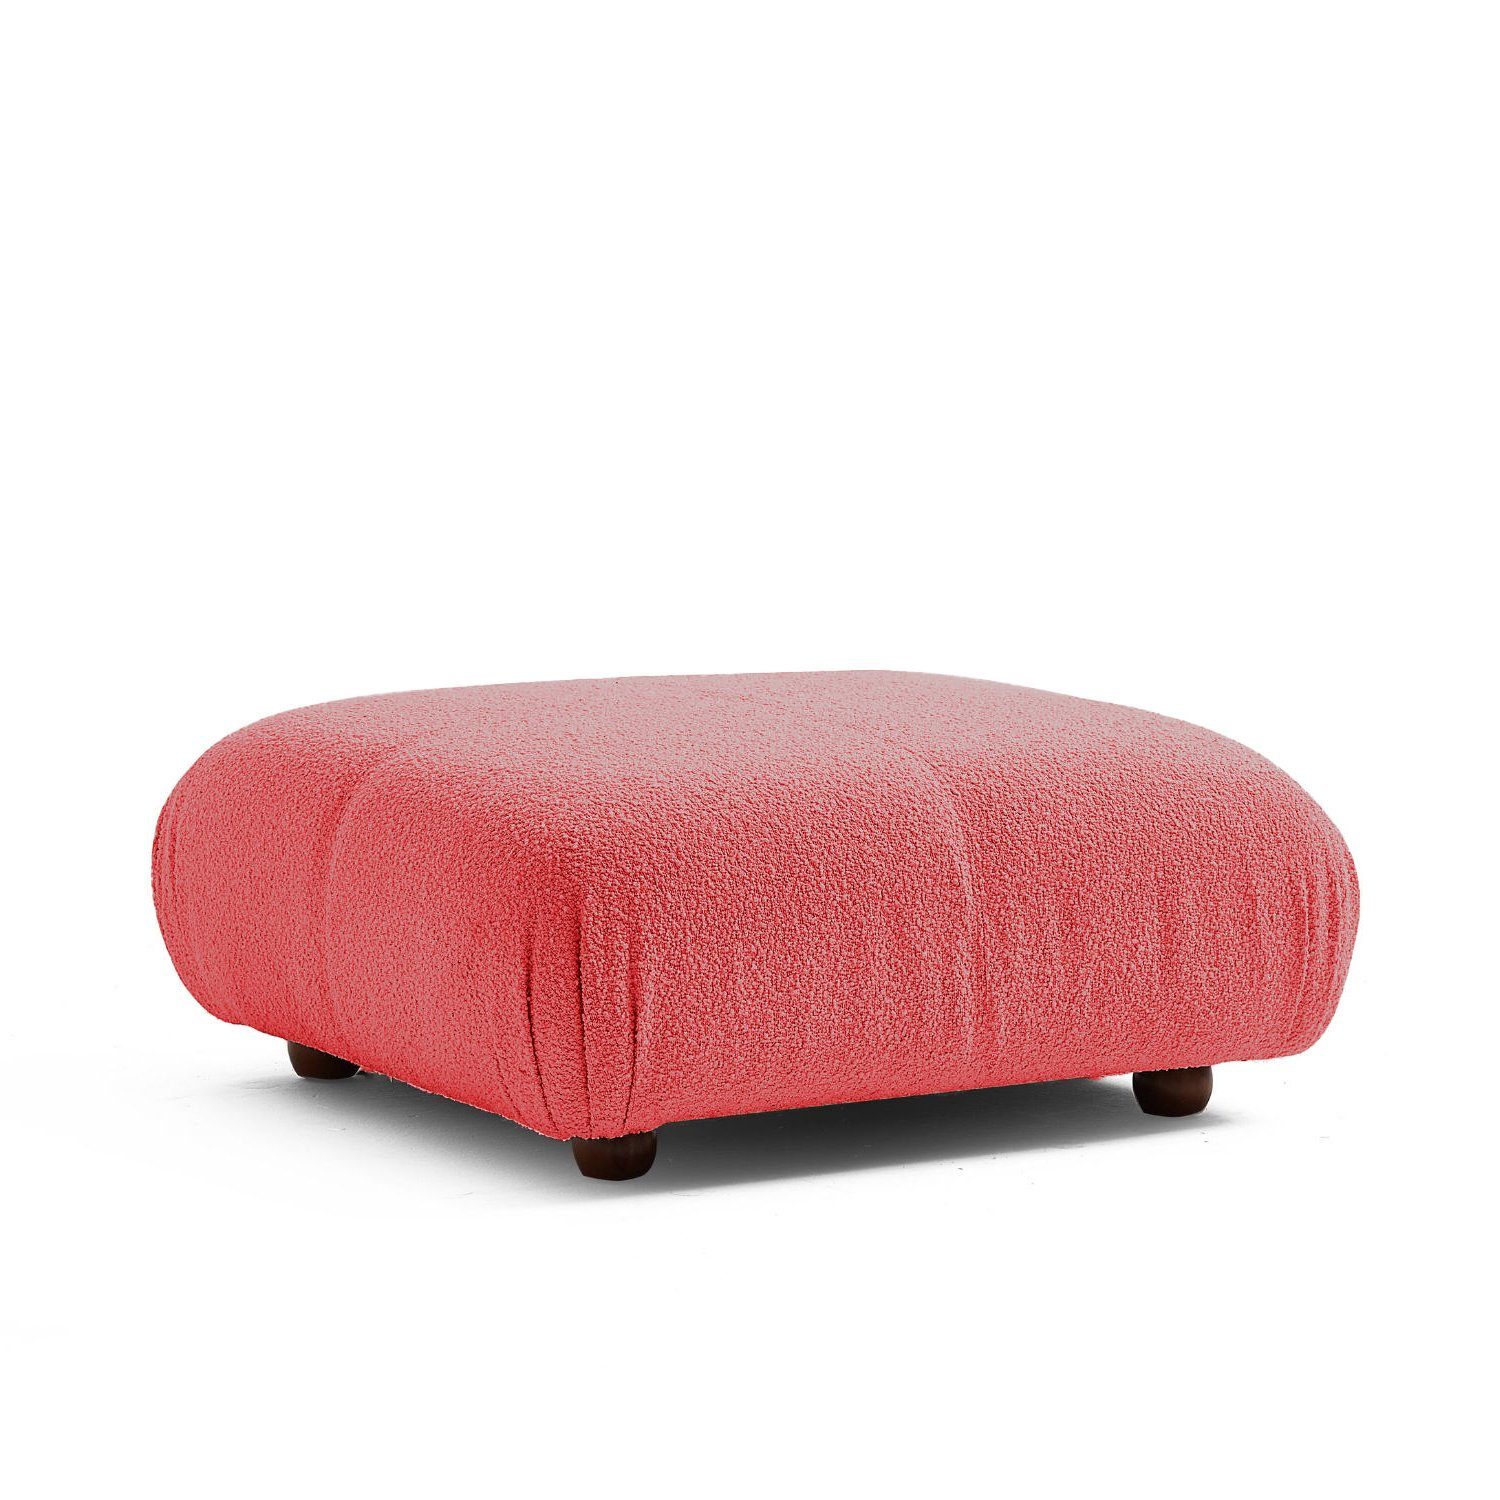 Komfortschaum Generation Knuffiges neueste Aufbau enthalten! aus Preis im Touch Sitzmöbel und Rot-Lieferung Sofa me